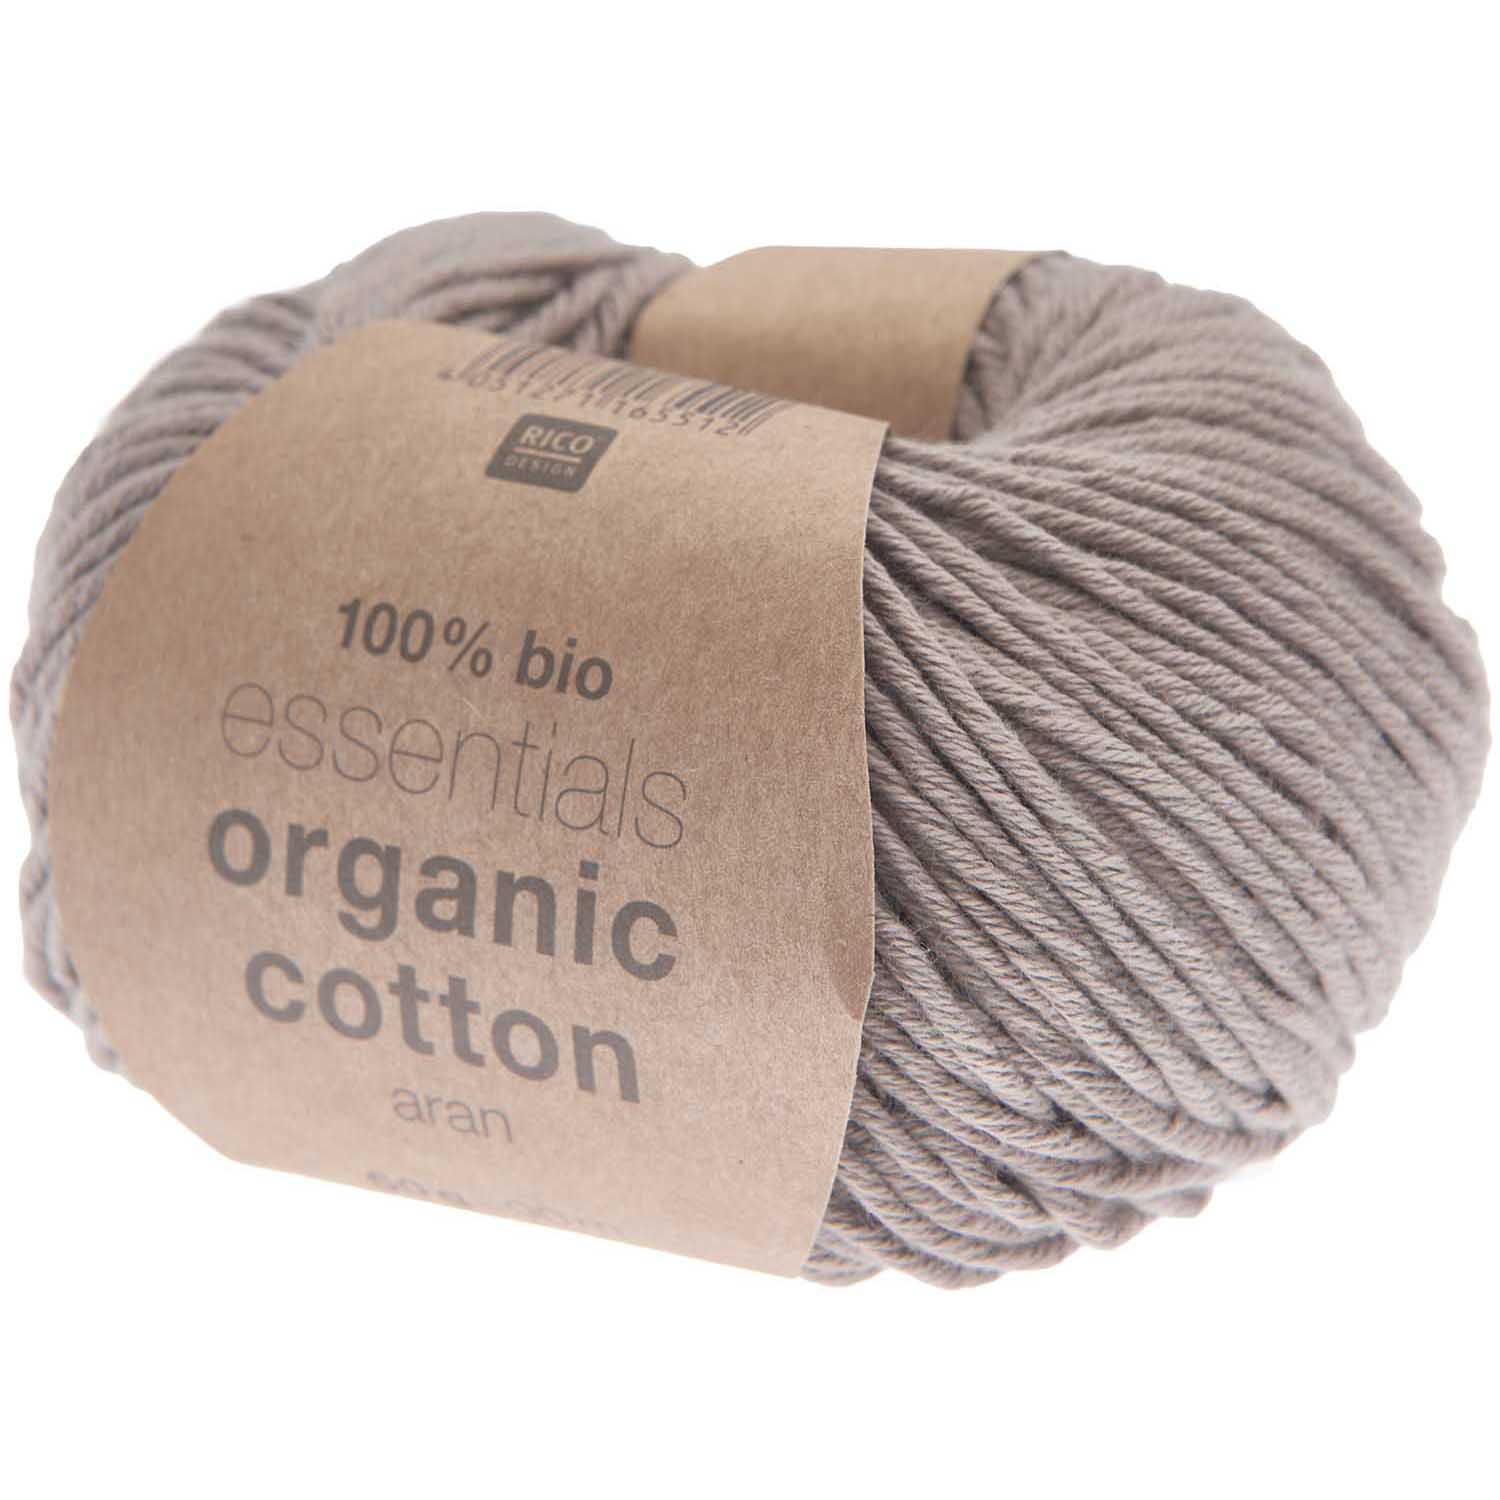 Rico Essentials Organic Cotton Aran - Taupe (025)